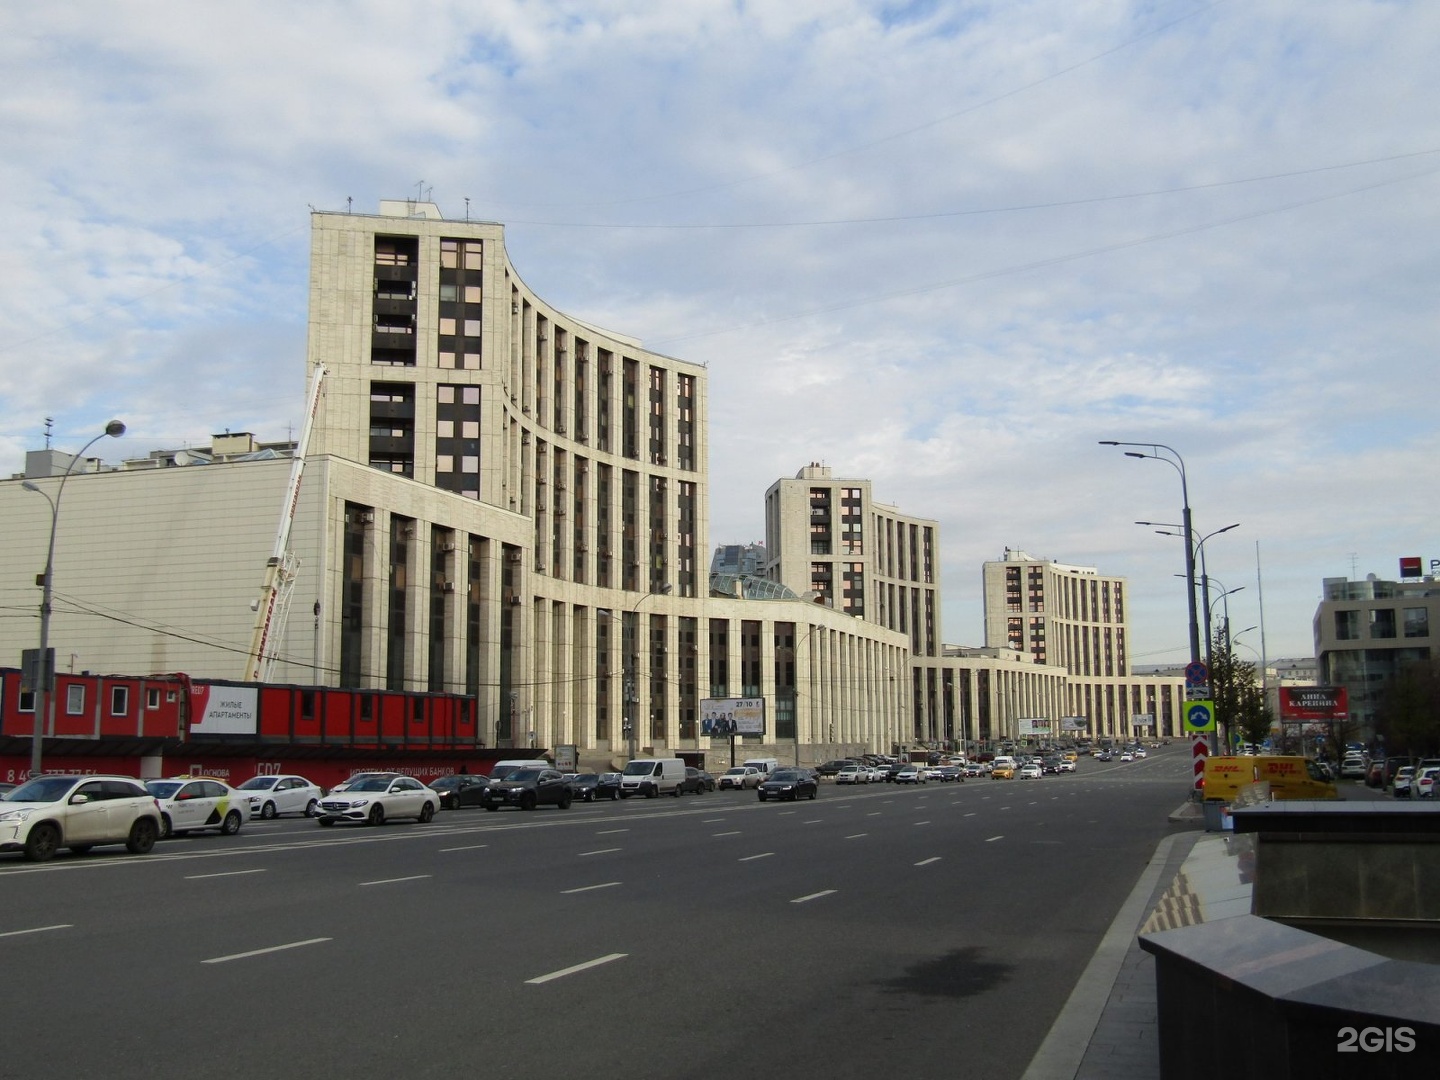 сахаровский центр в москве